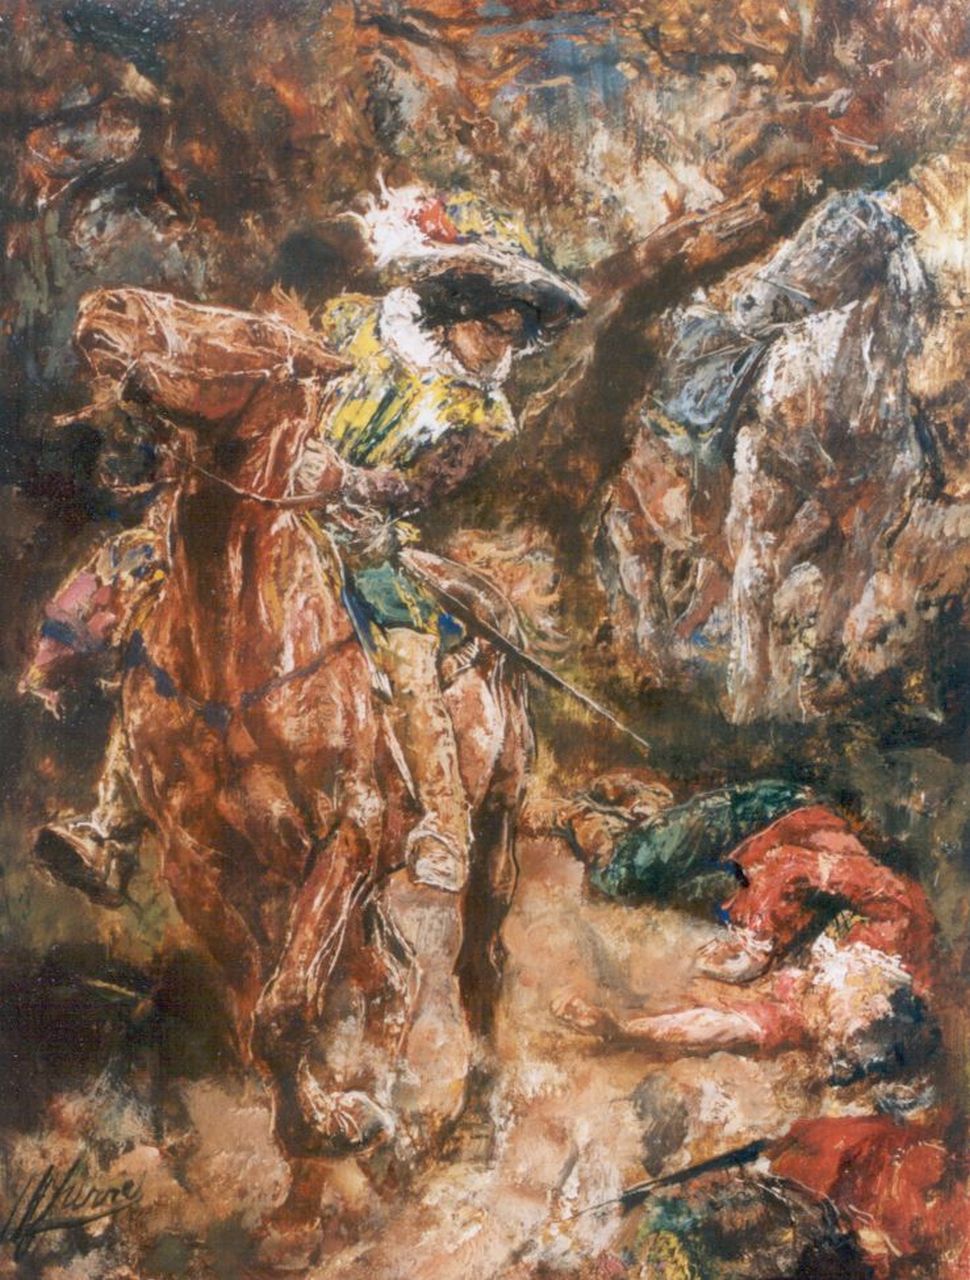 Jurres J.H.  | Johannes Hendricus Jurres, Scene from Gilblat, oil on panel 28.5 x 21.8 cm, signed l.l.